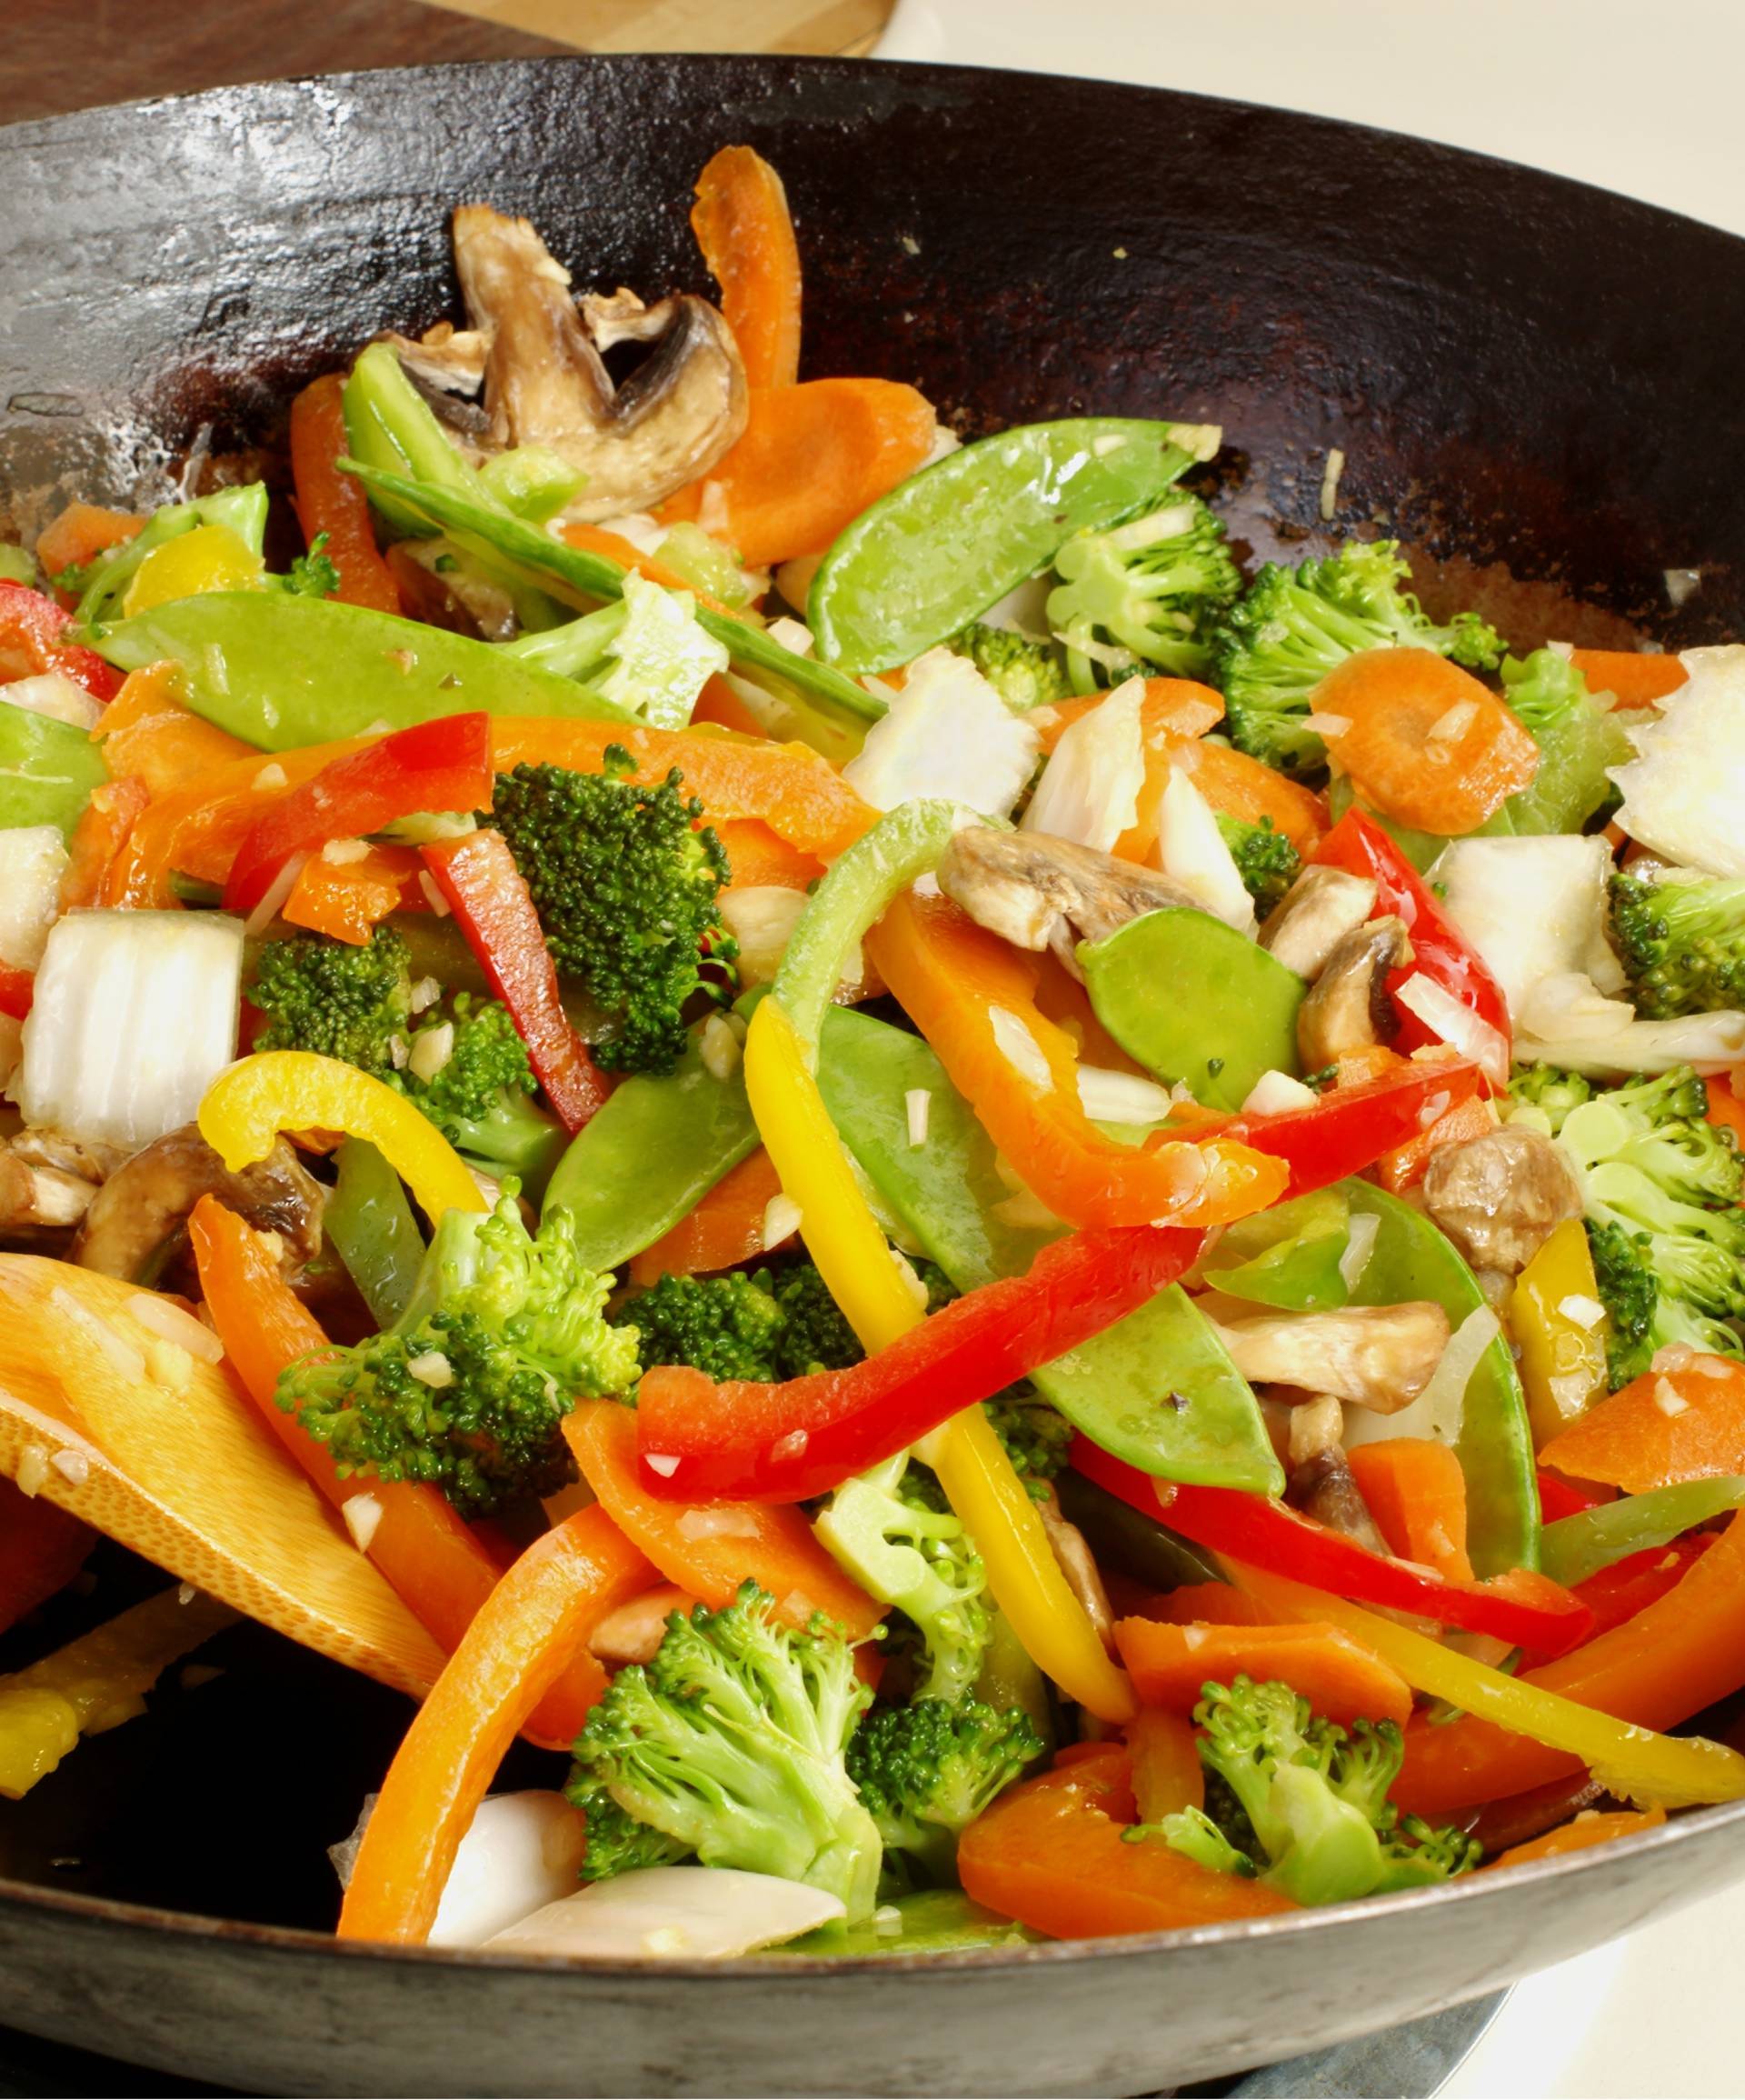 Povrće u woku: Ukusno, lagano i zdravo jelo - brzo je gotovo